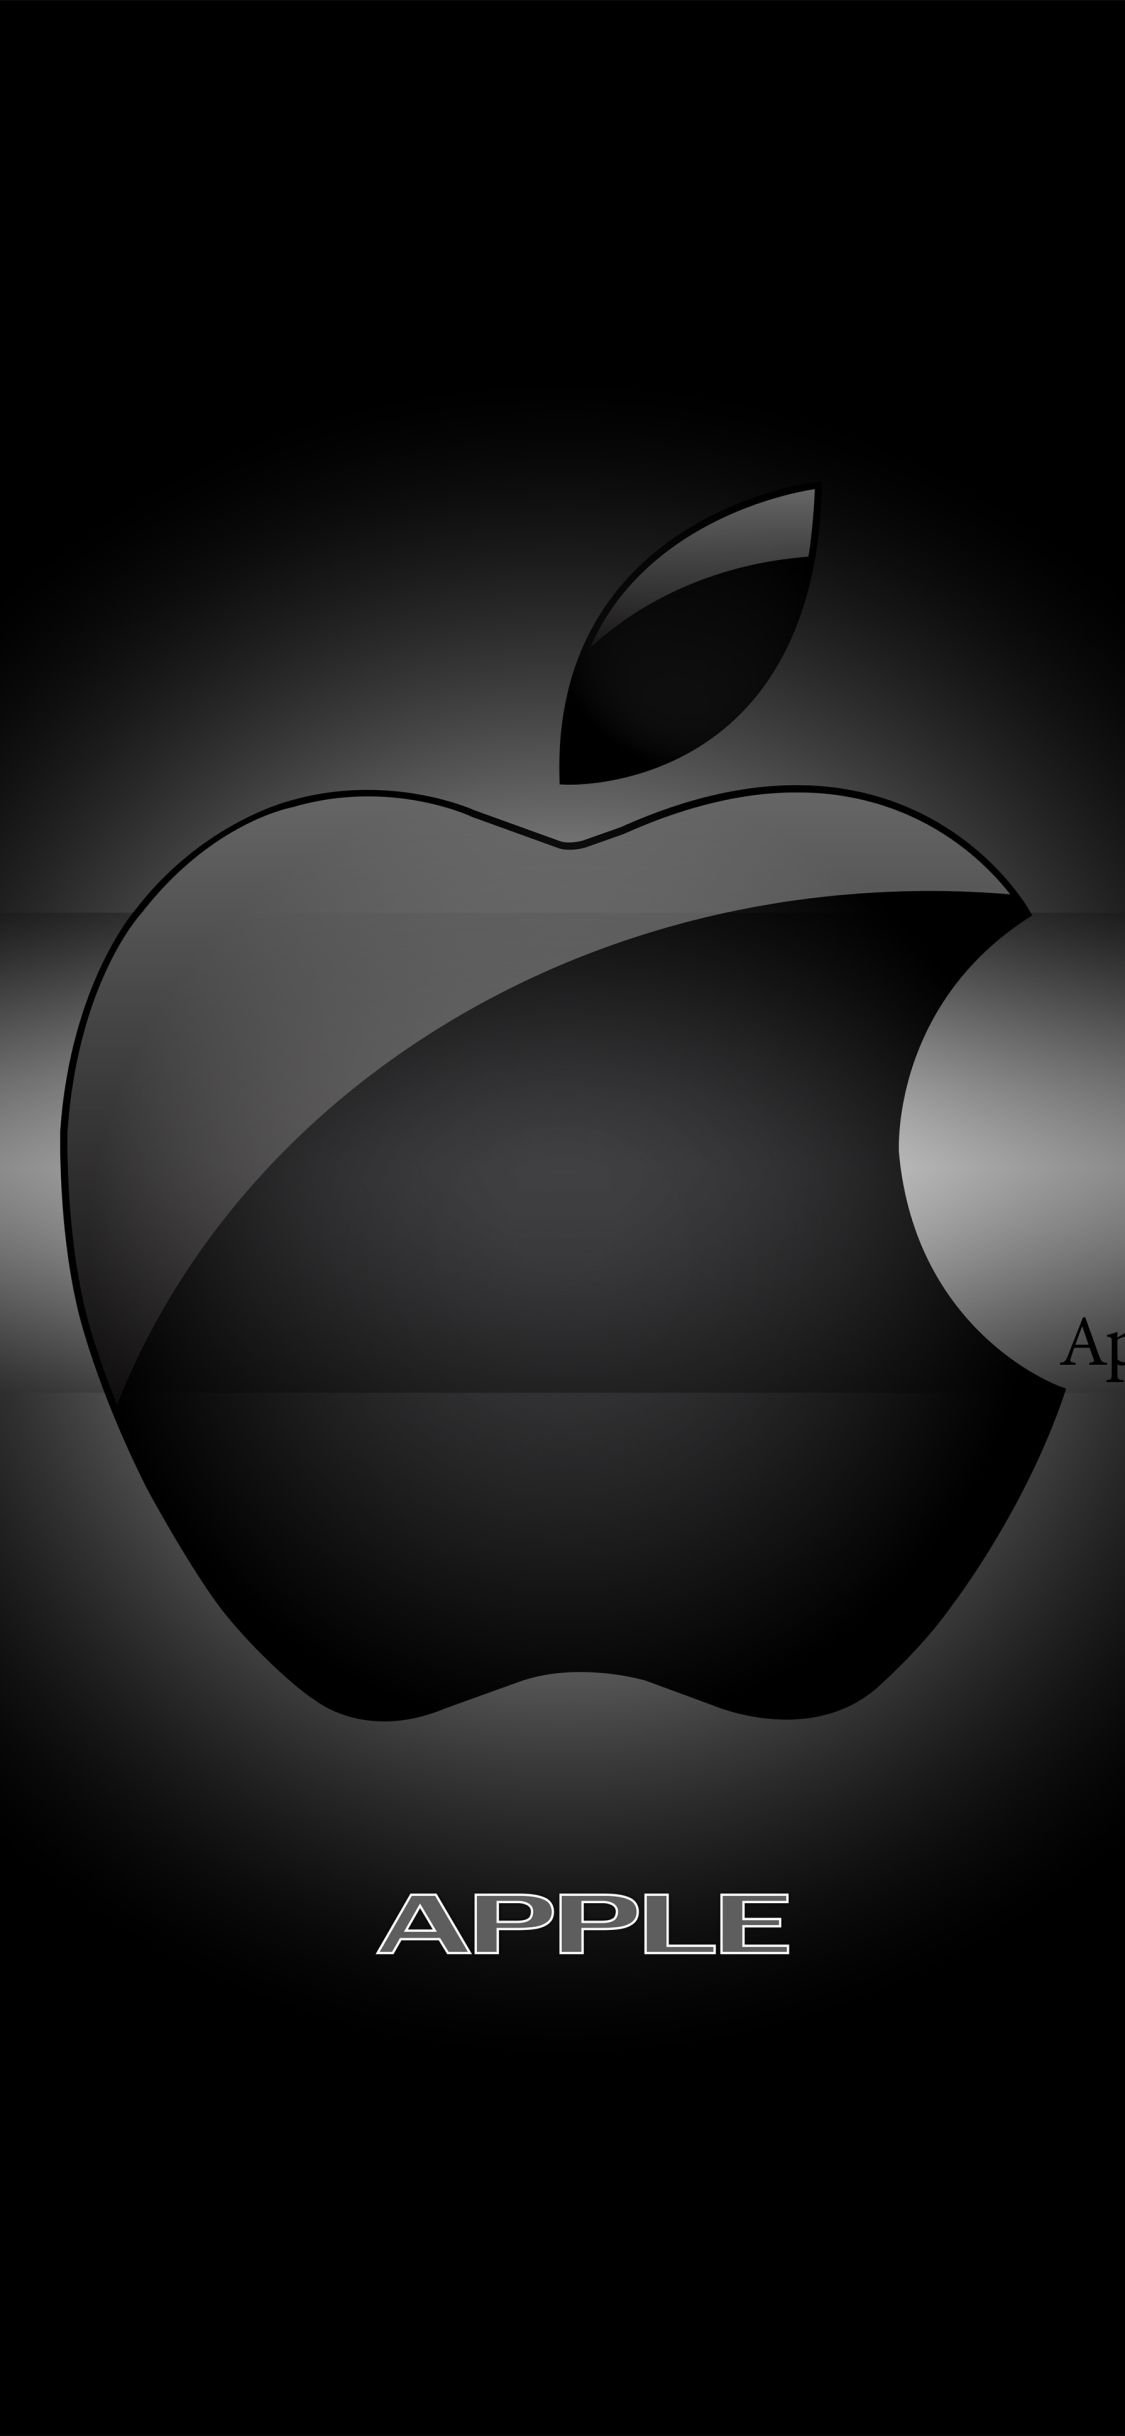 iPhone 12 Wallpaper 4K, Apple logo, Pro, Pro Max, Mini, #3273